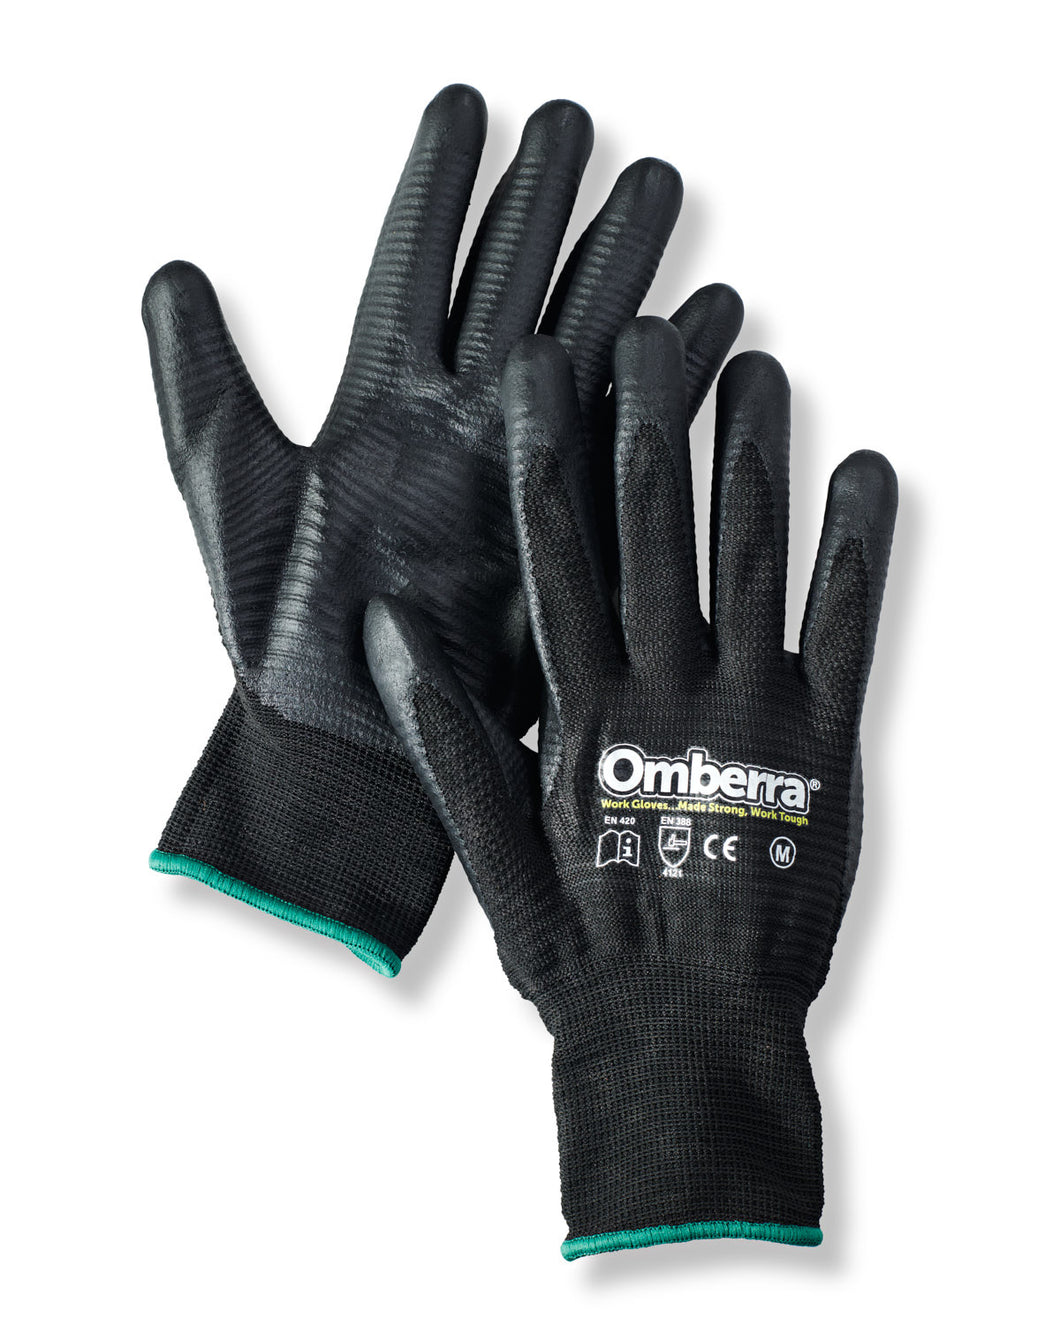 Black Work Gloves Nitrile Grip 12 Pair Pack